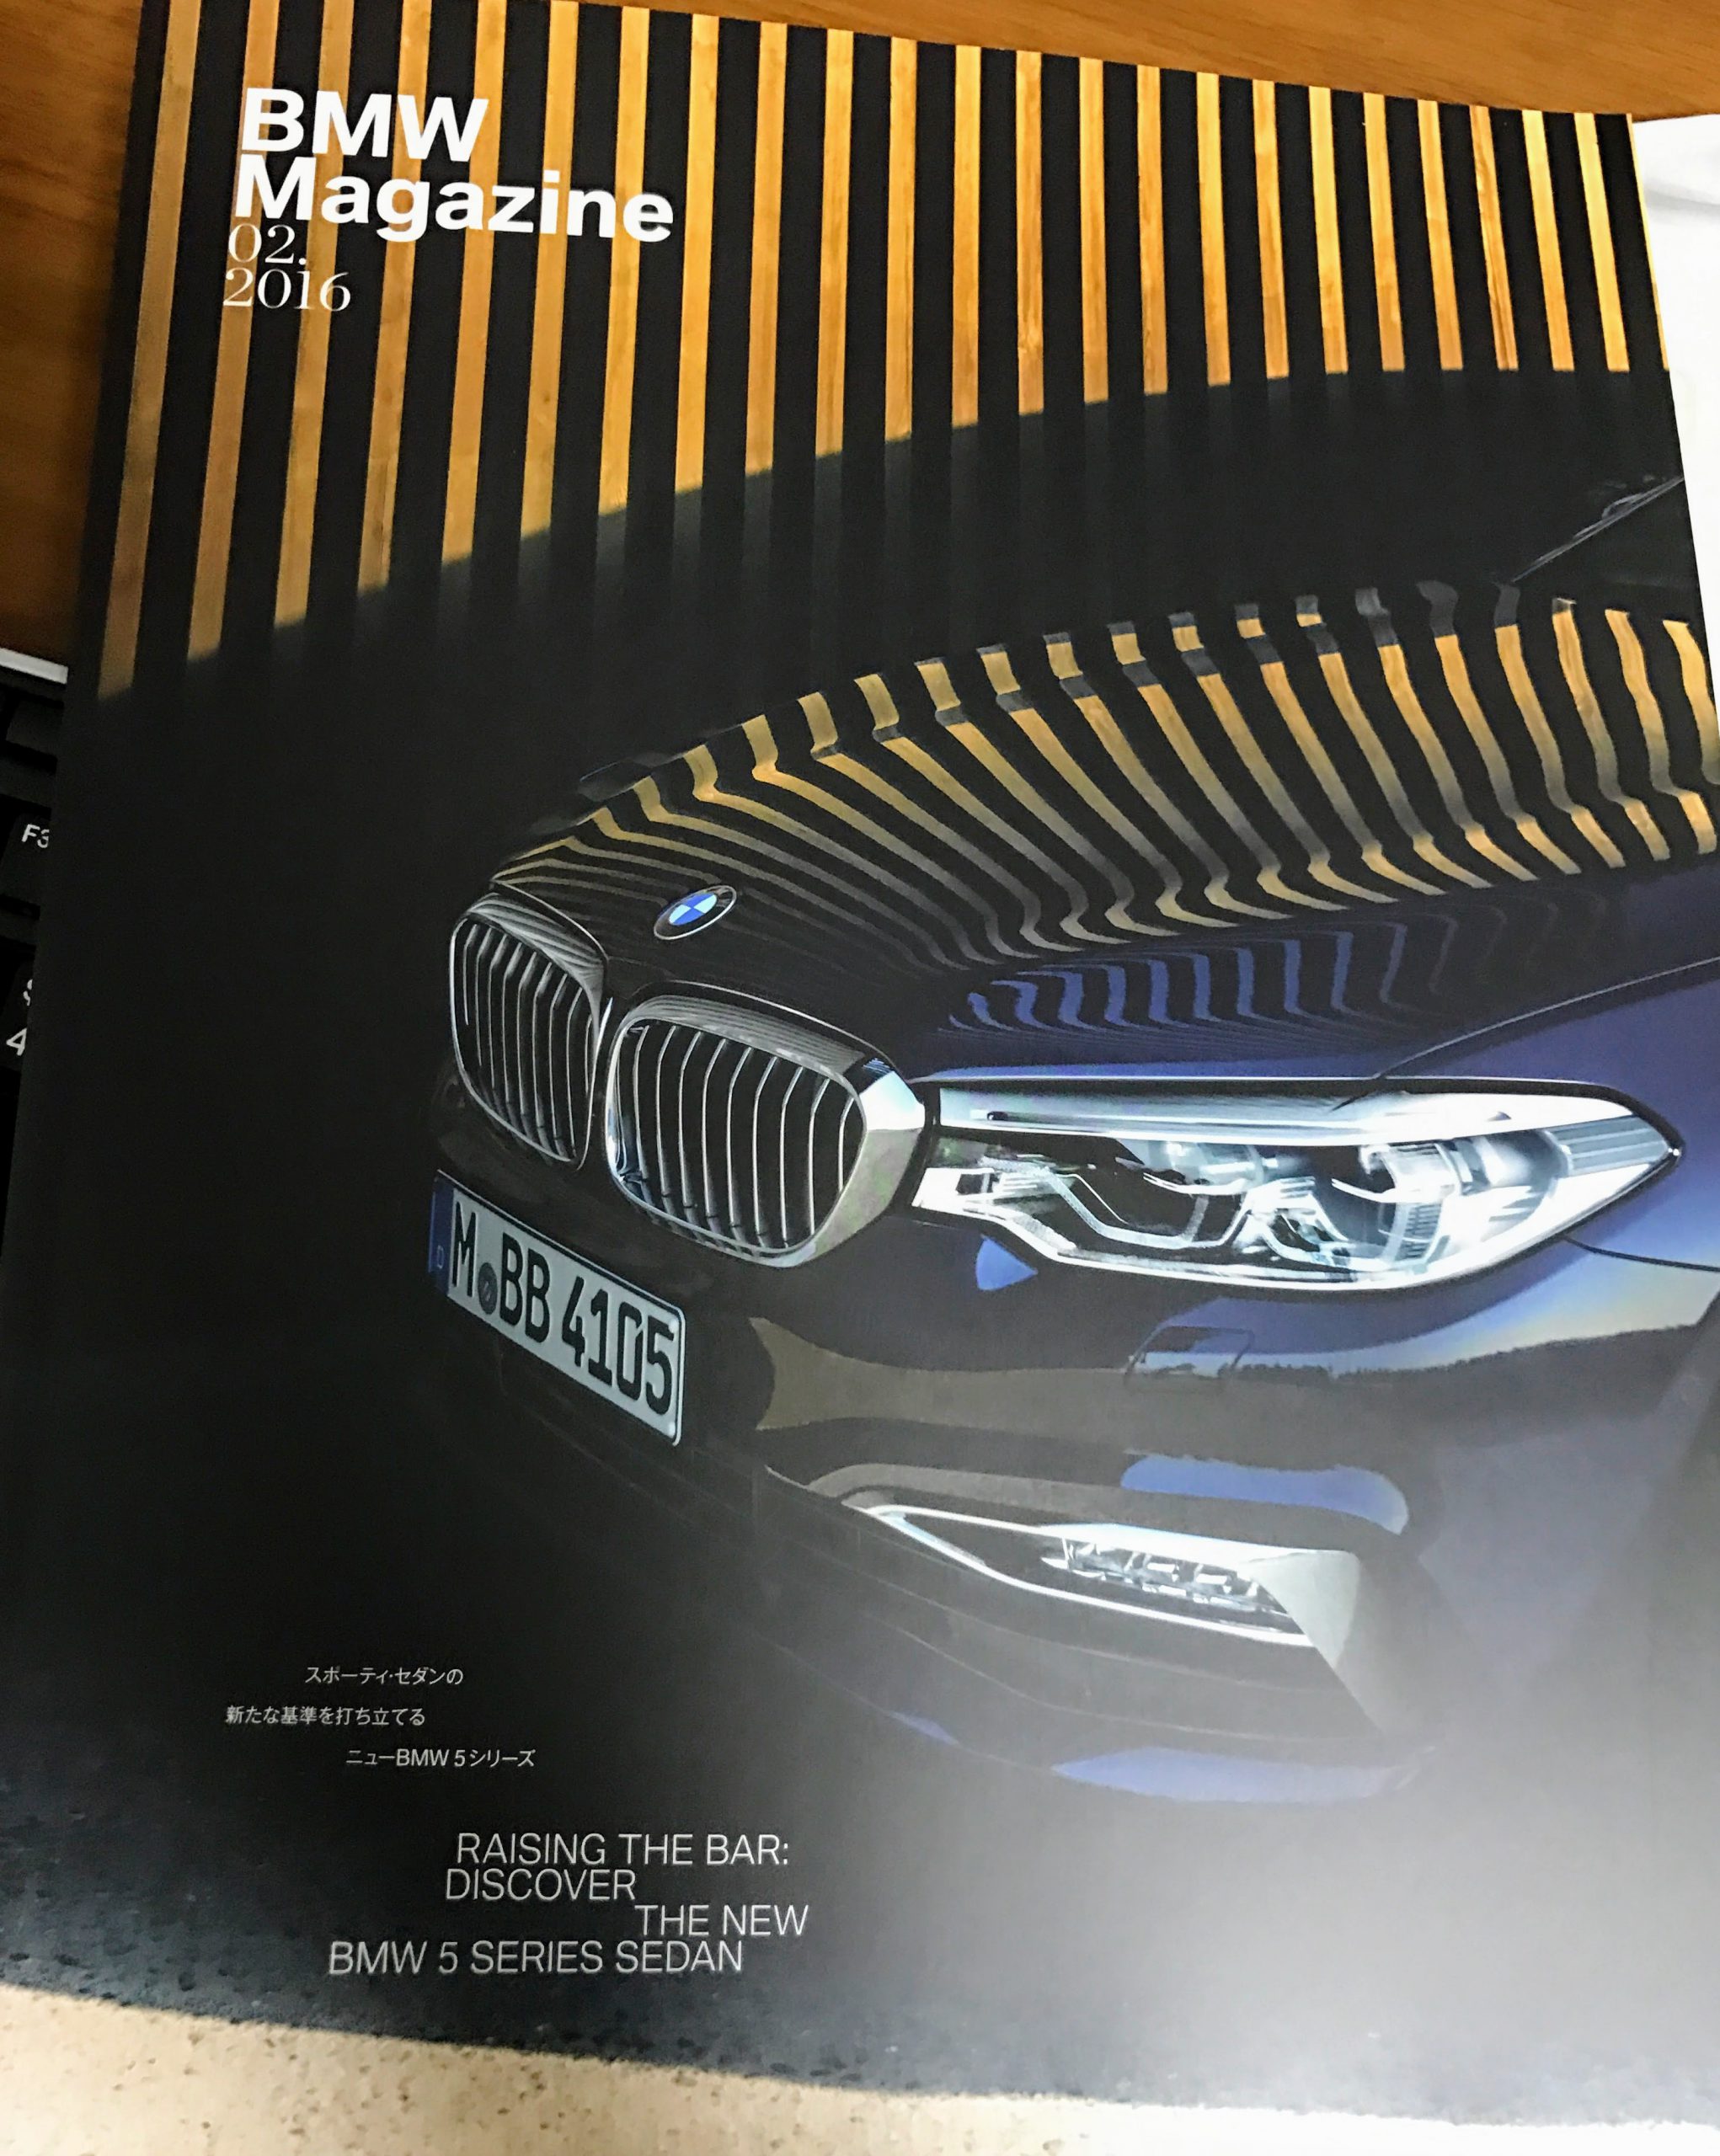 BMWマガジン最新号が届いてました♪今回は新型５シリーズ特集でした＾＾